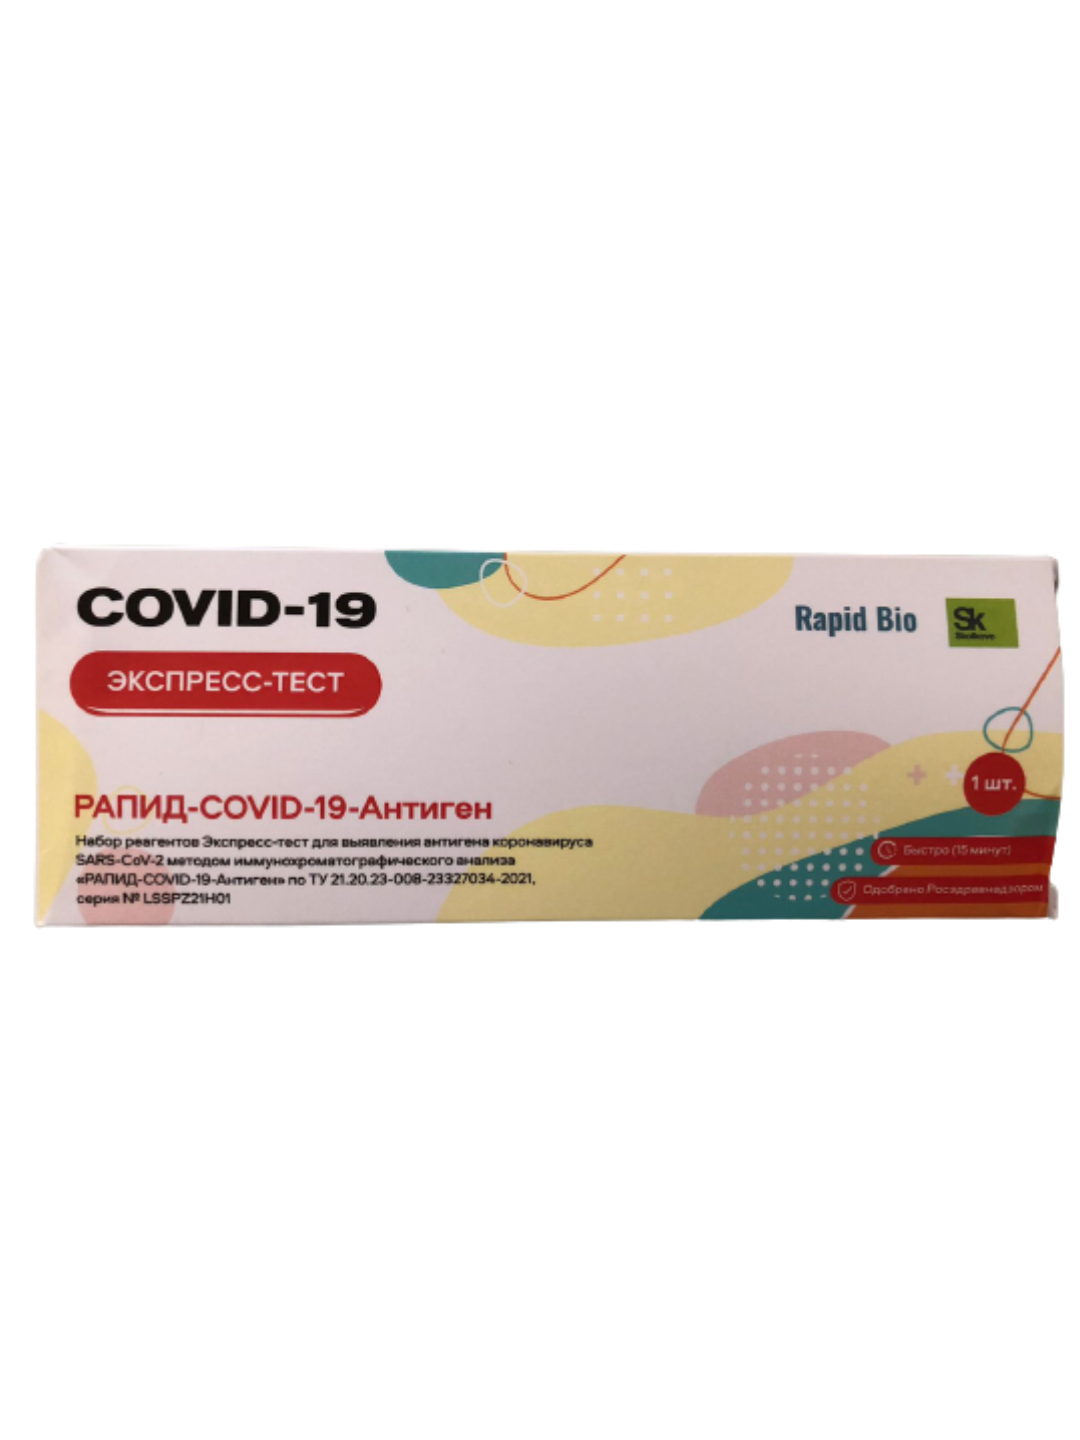 Купить Для домашнего использования, Экспресс-тест на коронавирус Рапид-COVID-19-антиген для домашнего использования, Rapid Bio